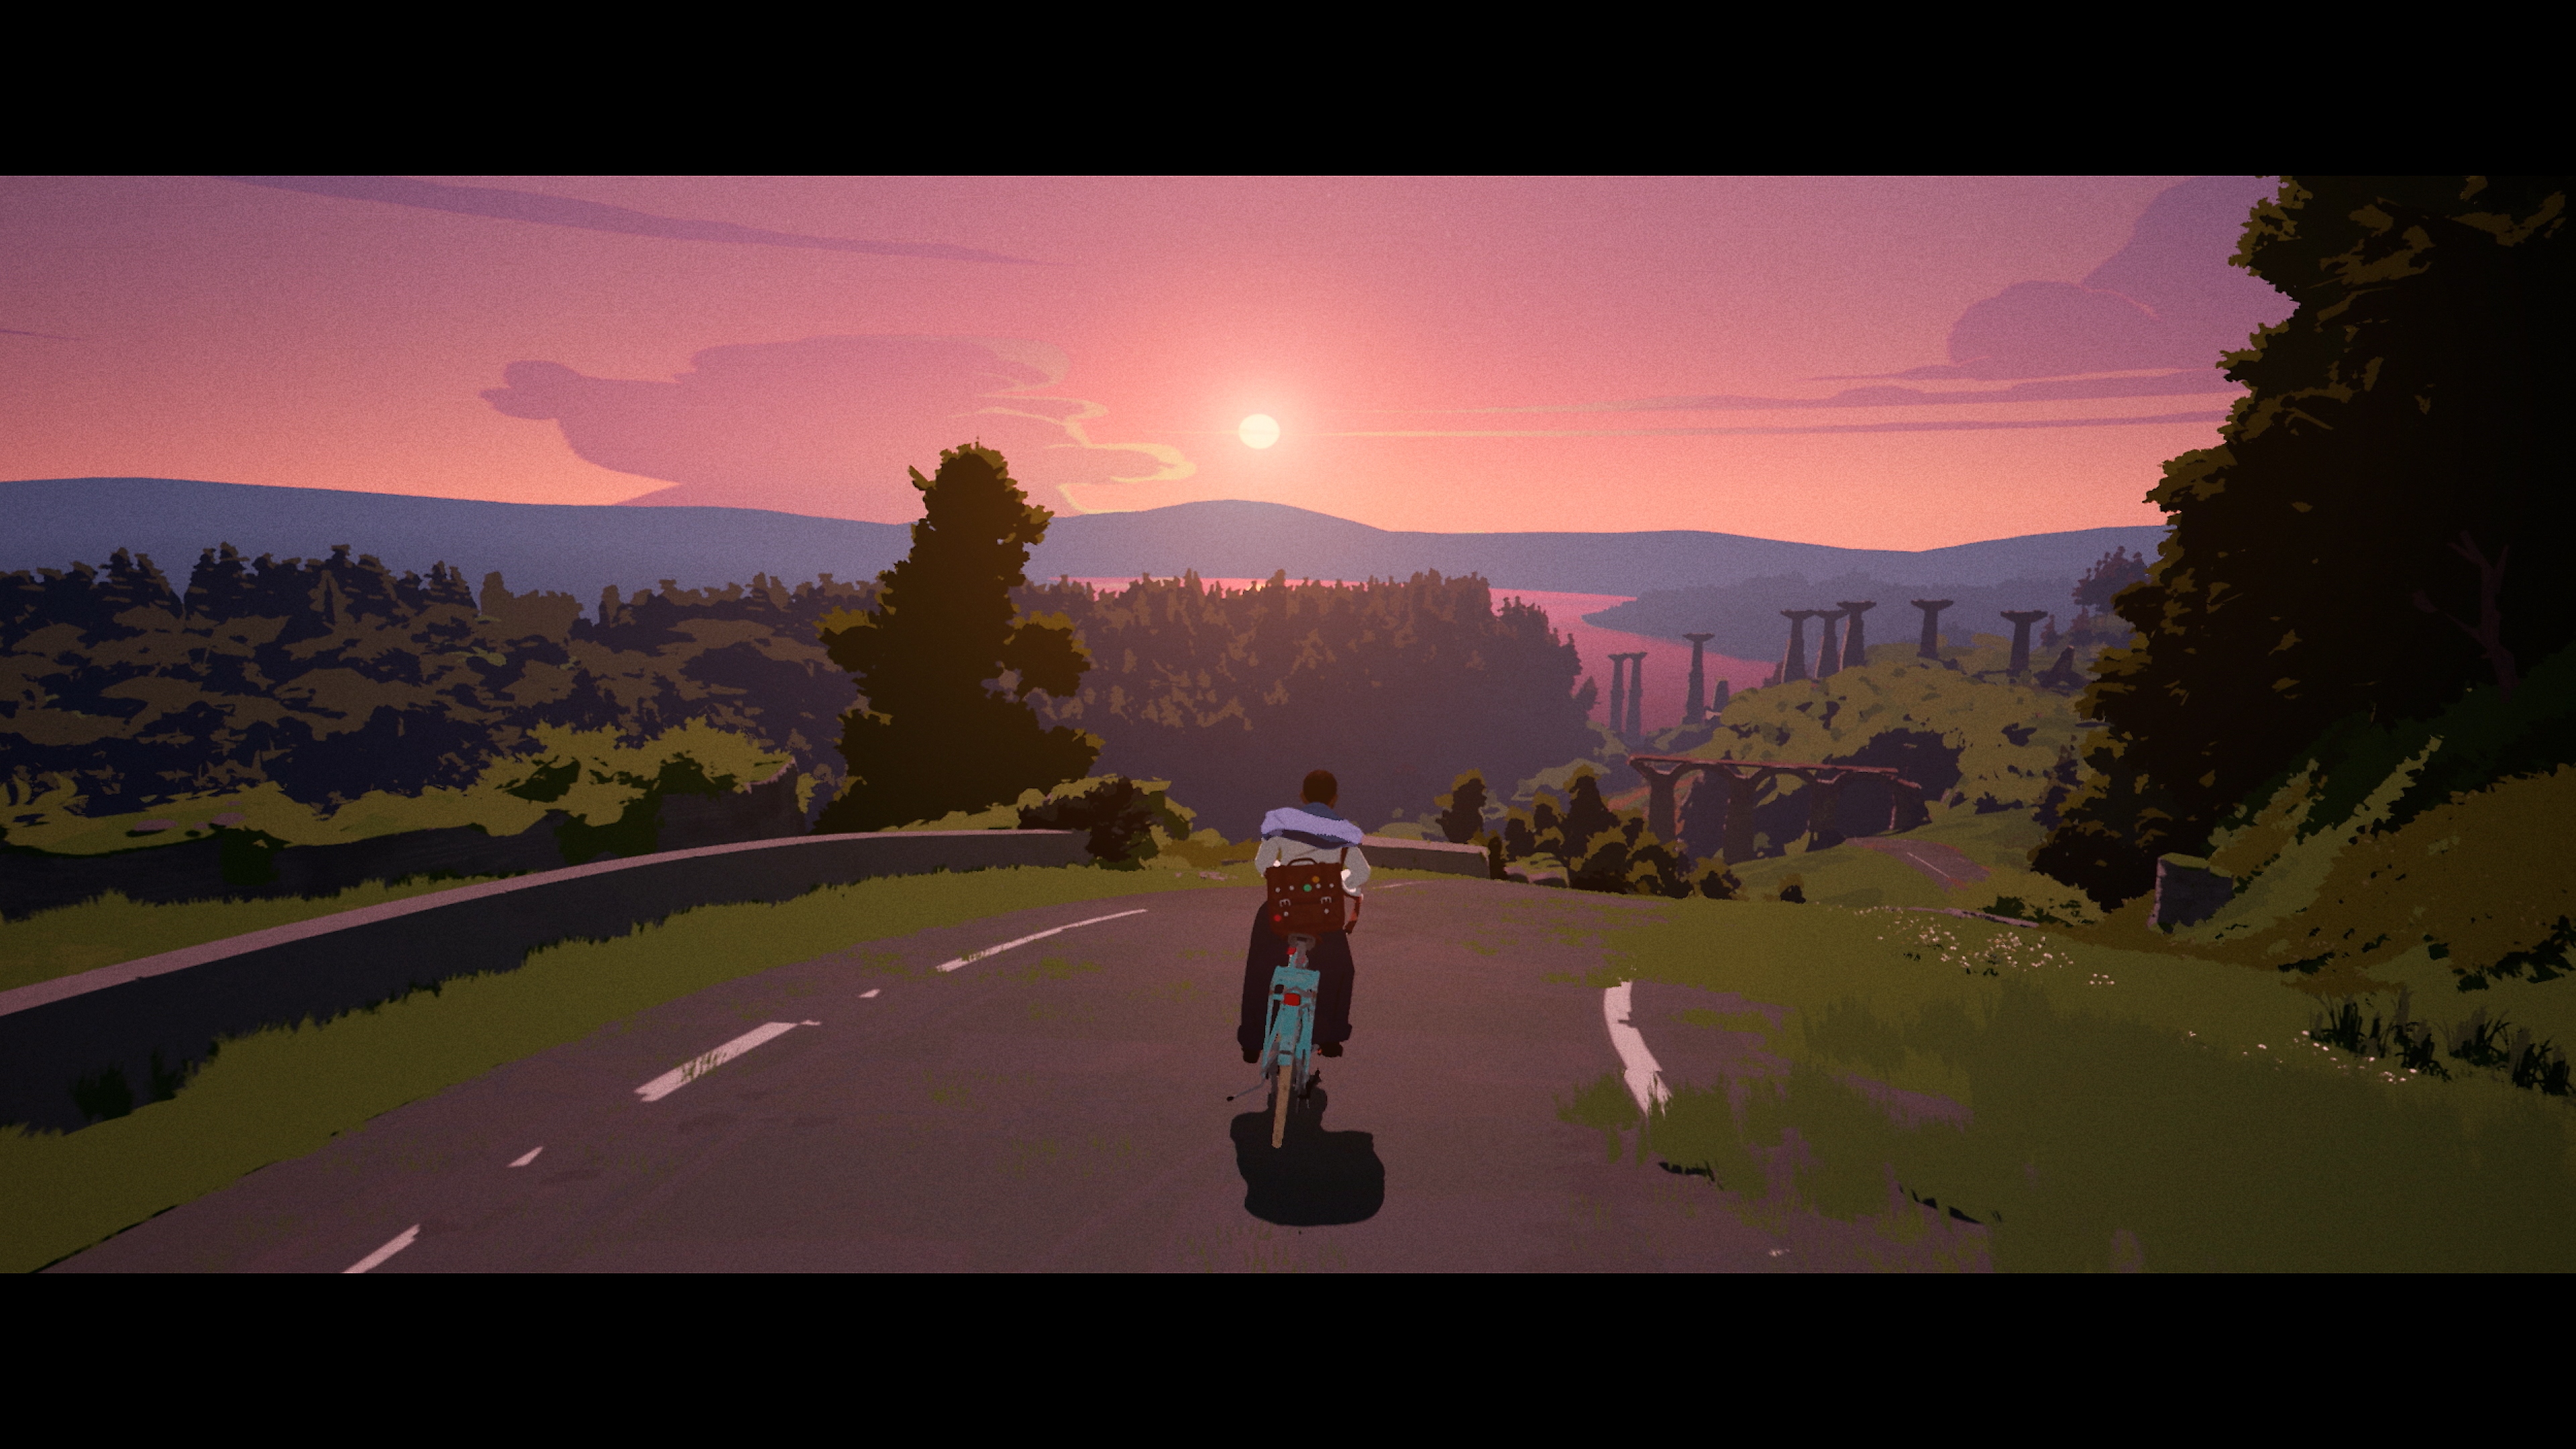 لعبة Season: A Letter to the Future - لقطة شاشة تعرض الشخصية الرئيسية تقود دراجة تحت سماء وردية